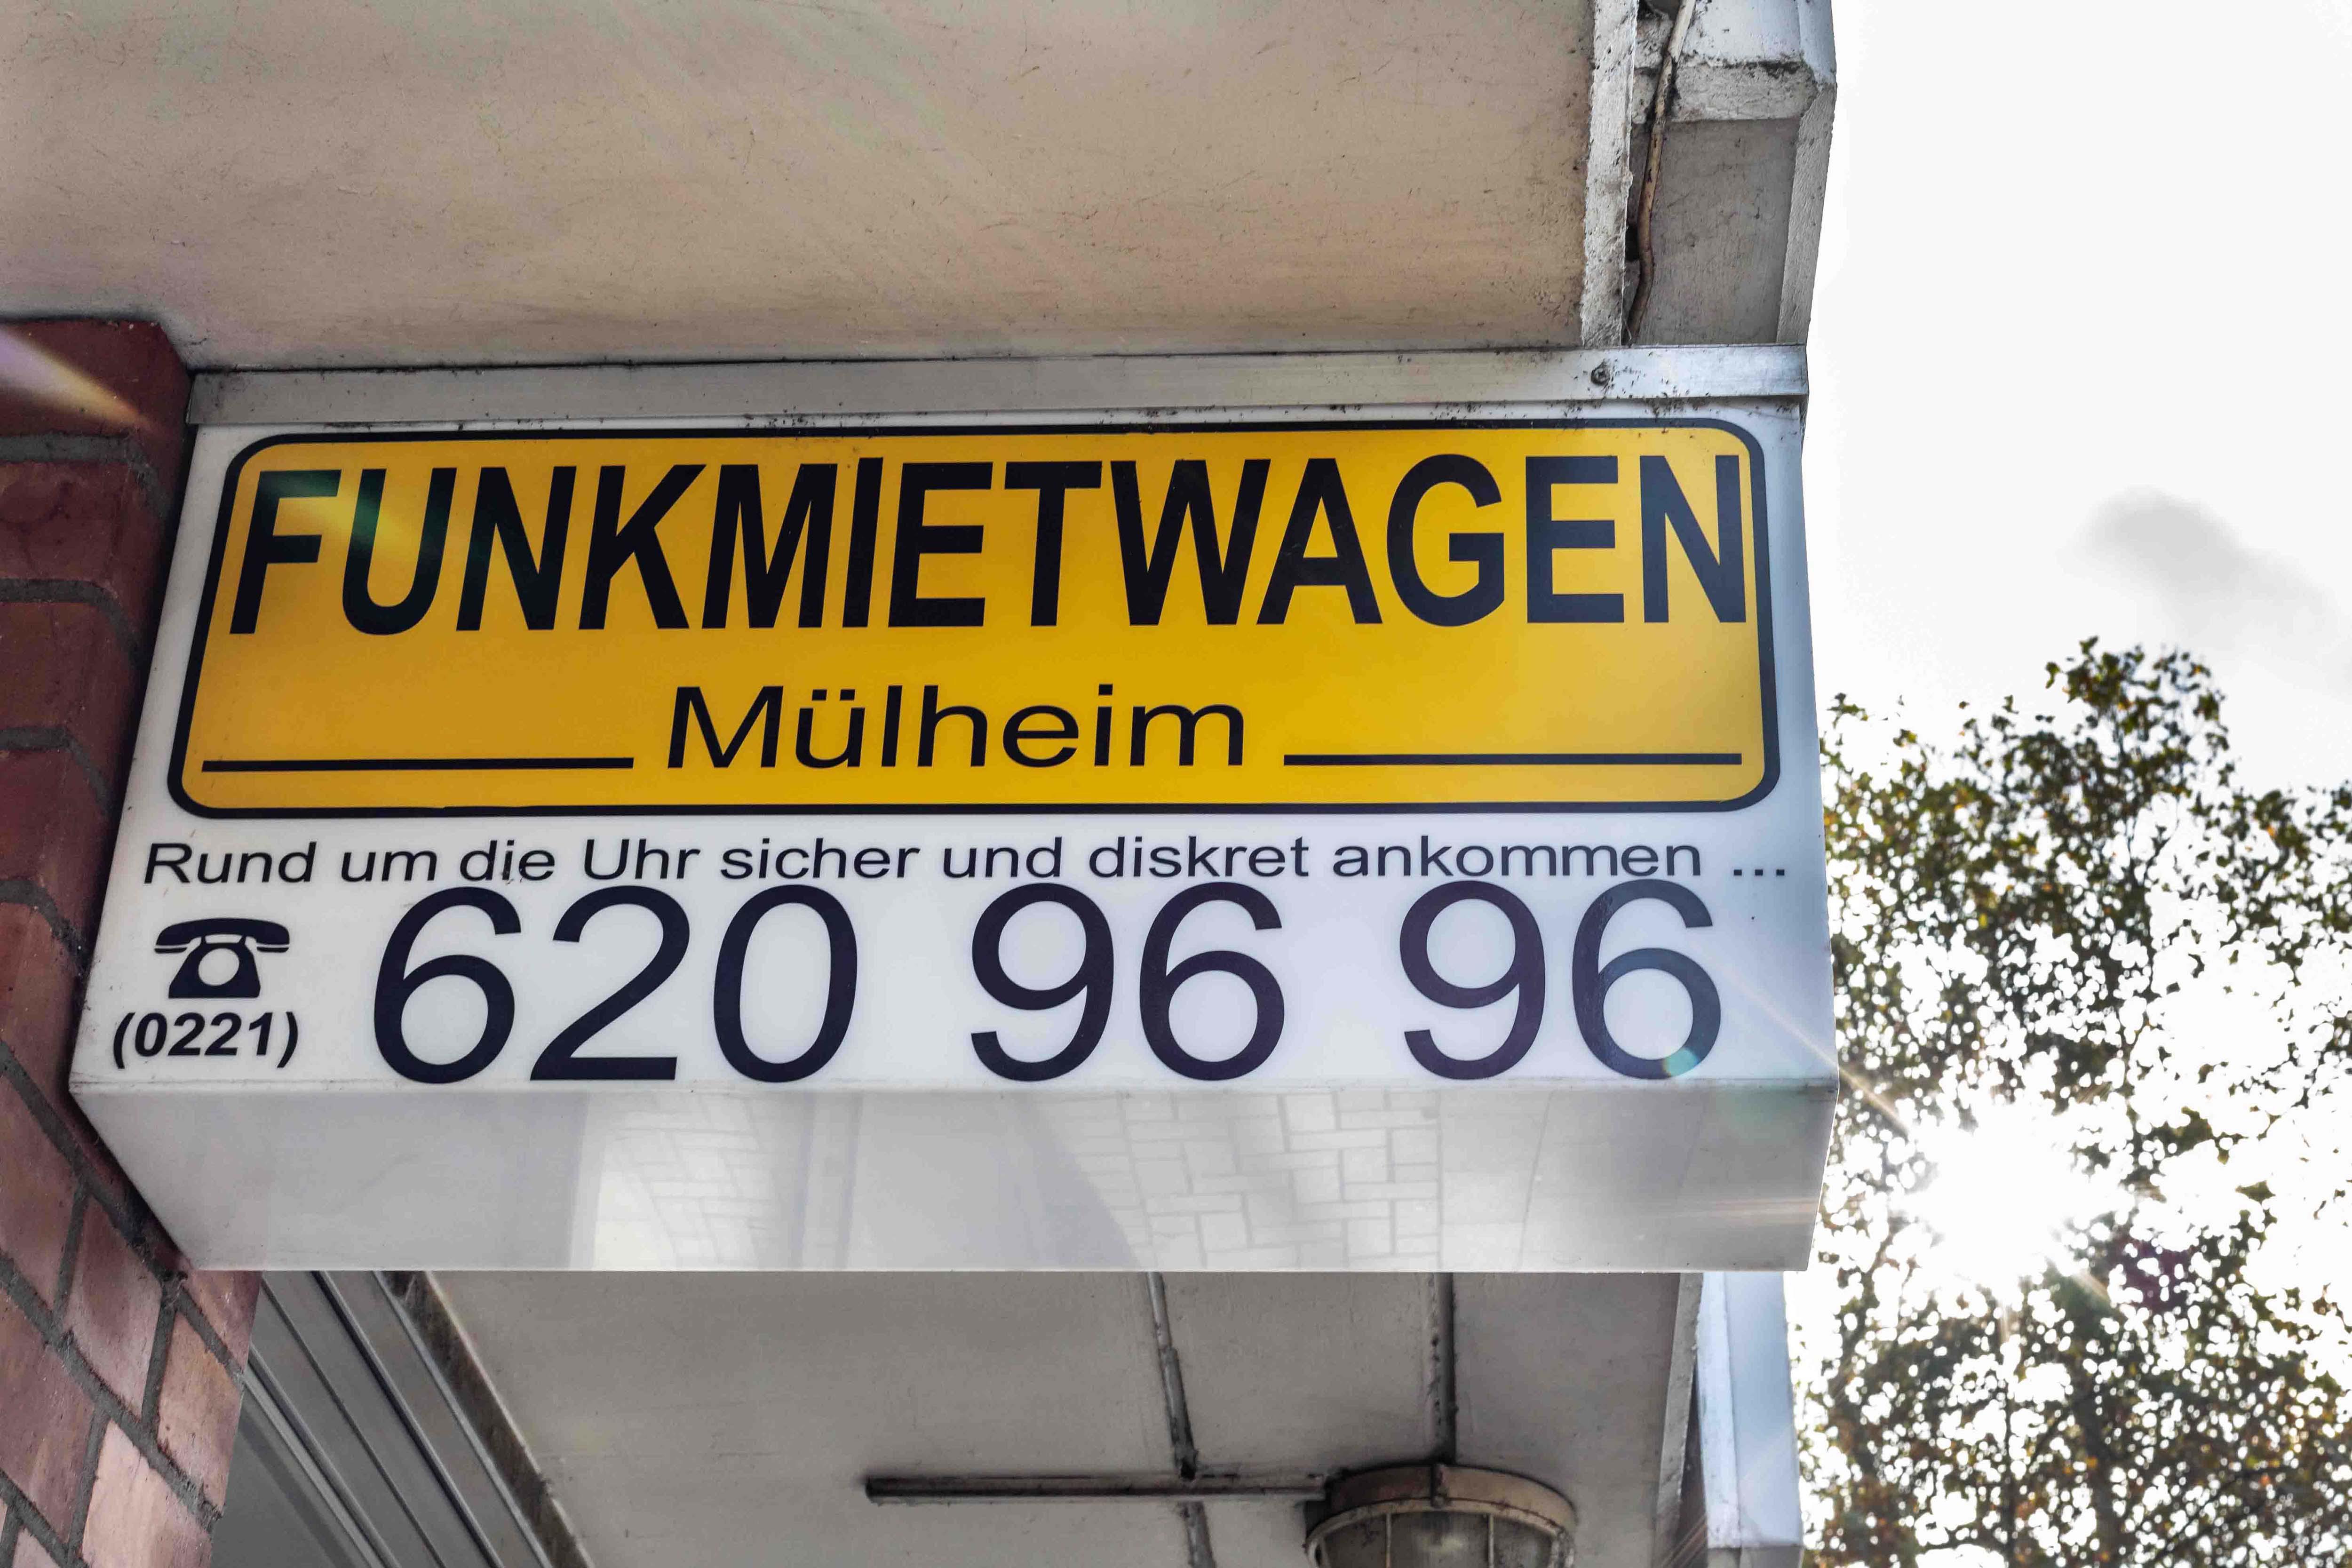 Funktaxi Mülheim, Clevischer Ring 86 in Köln